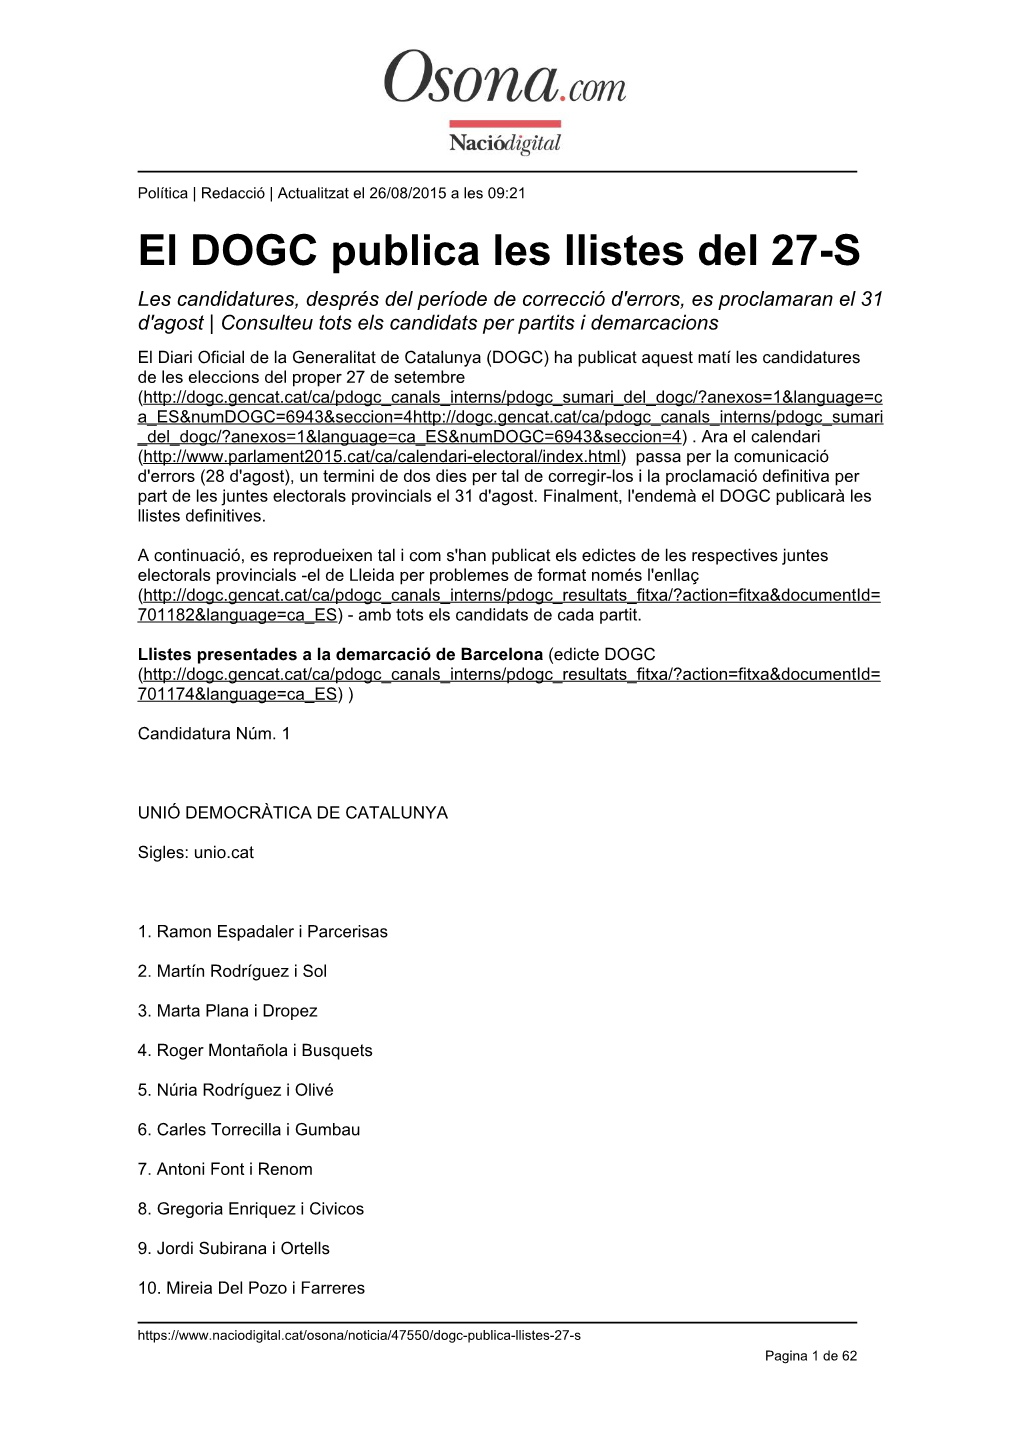 El DOGC Publica Les Llistes Del 27-S